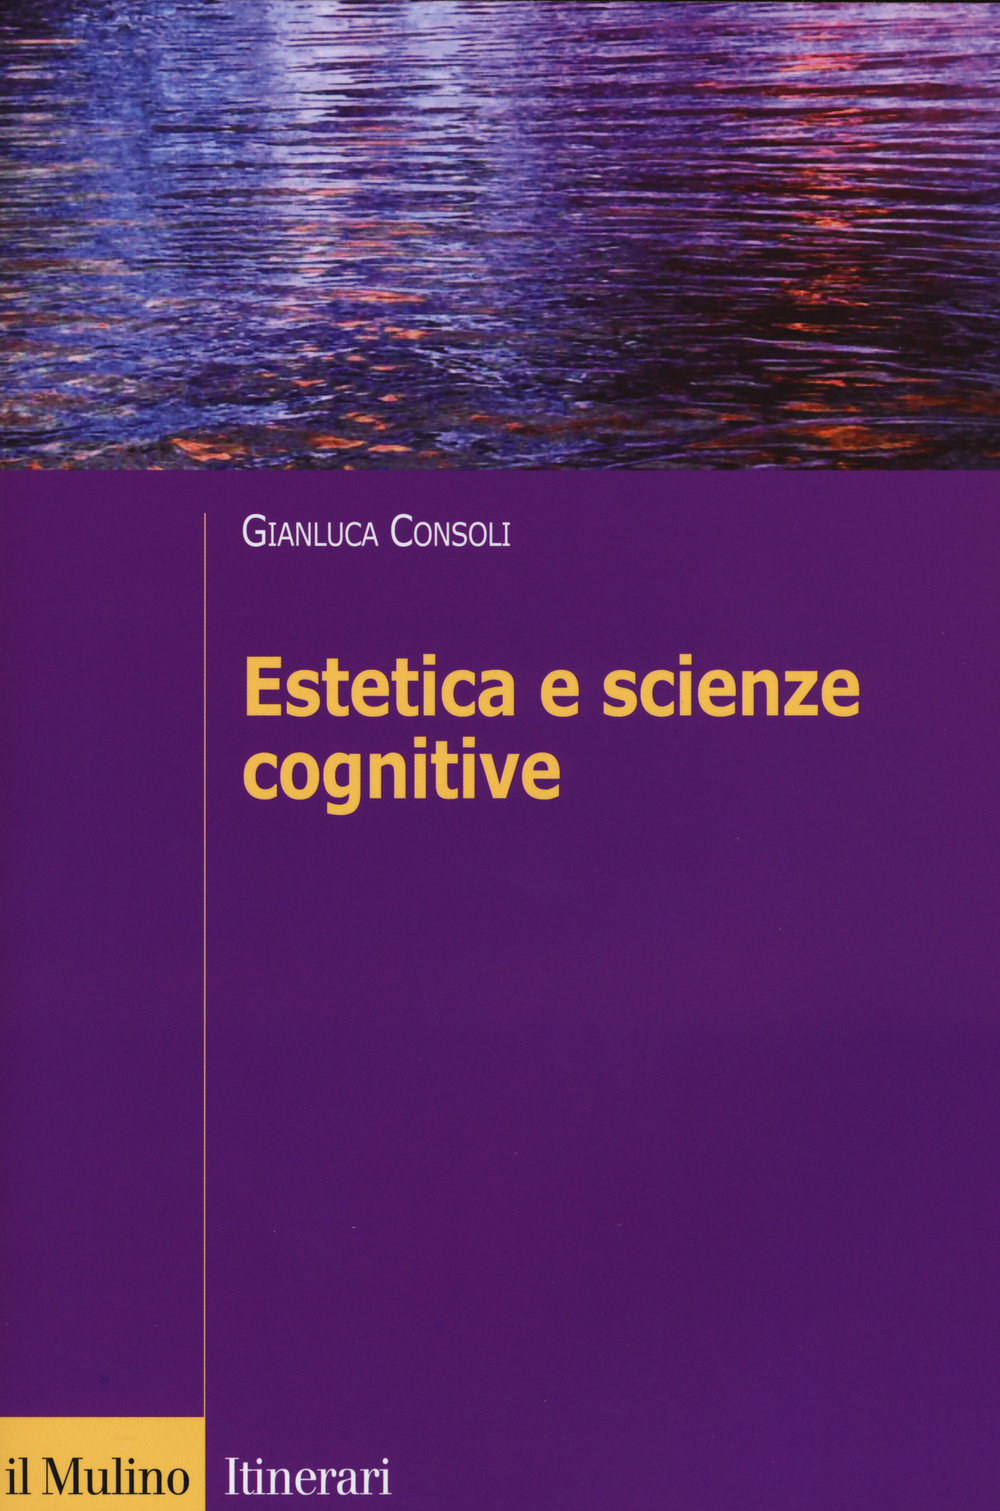 Image of Estetica e scienze cognitive